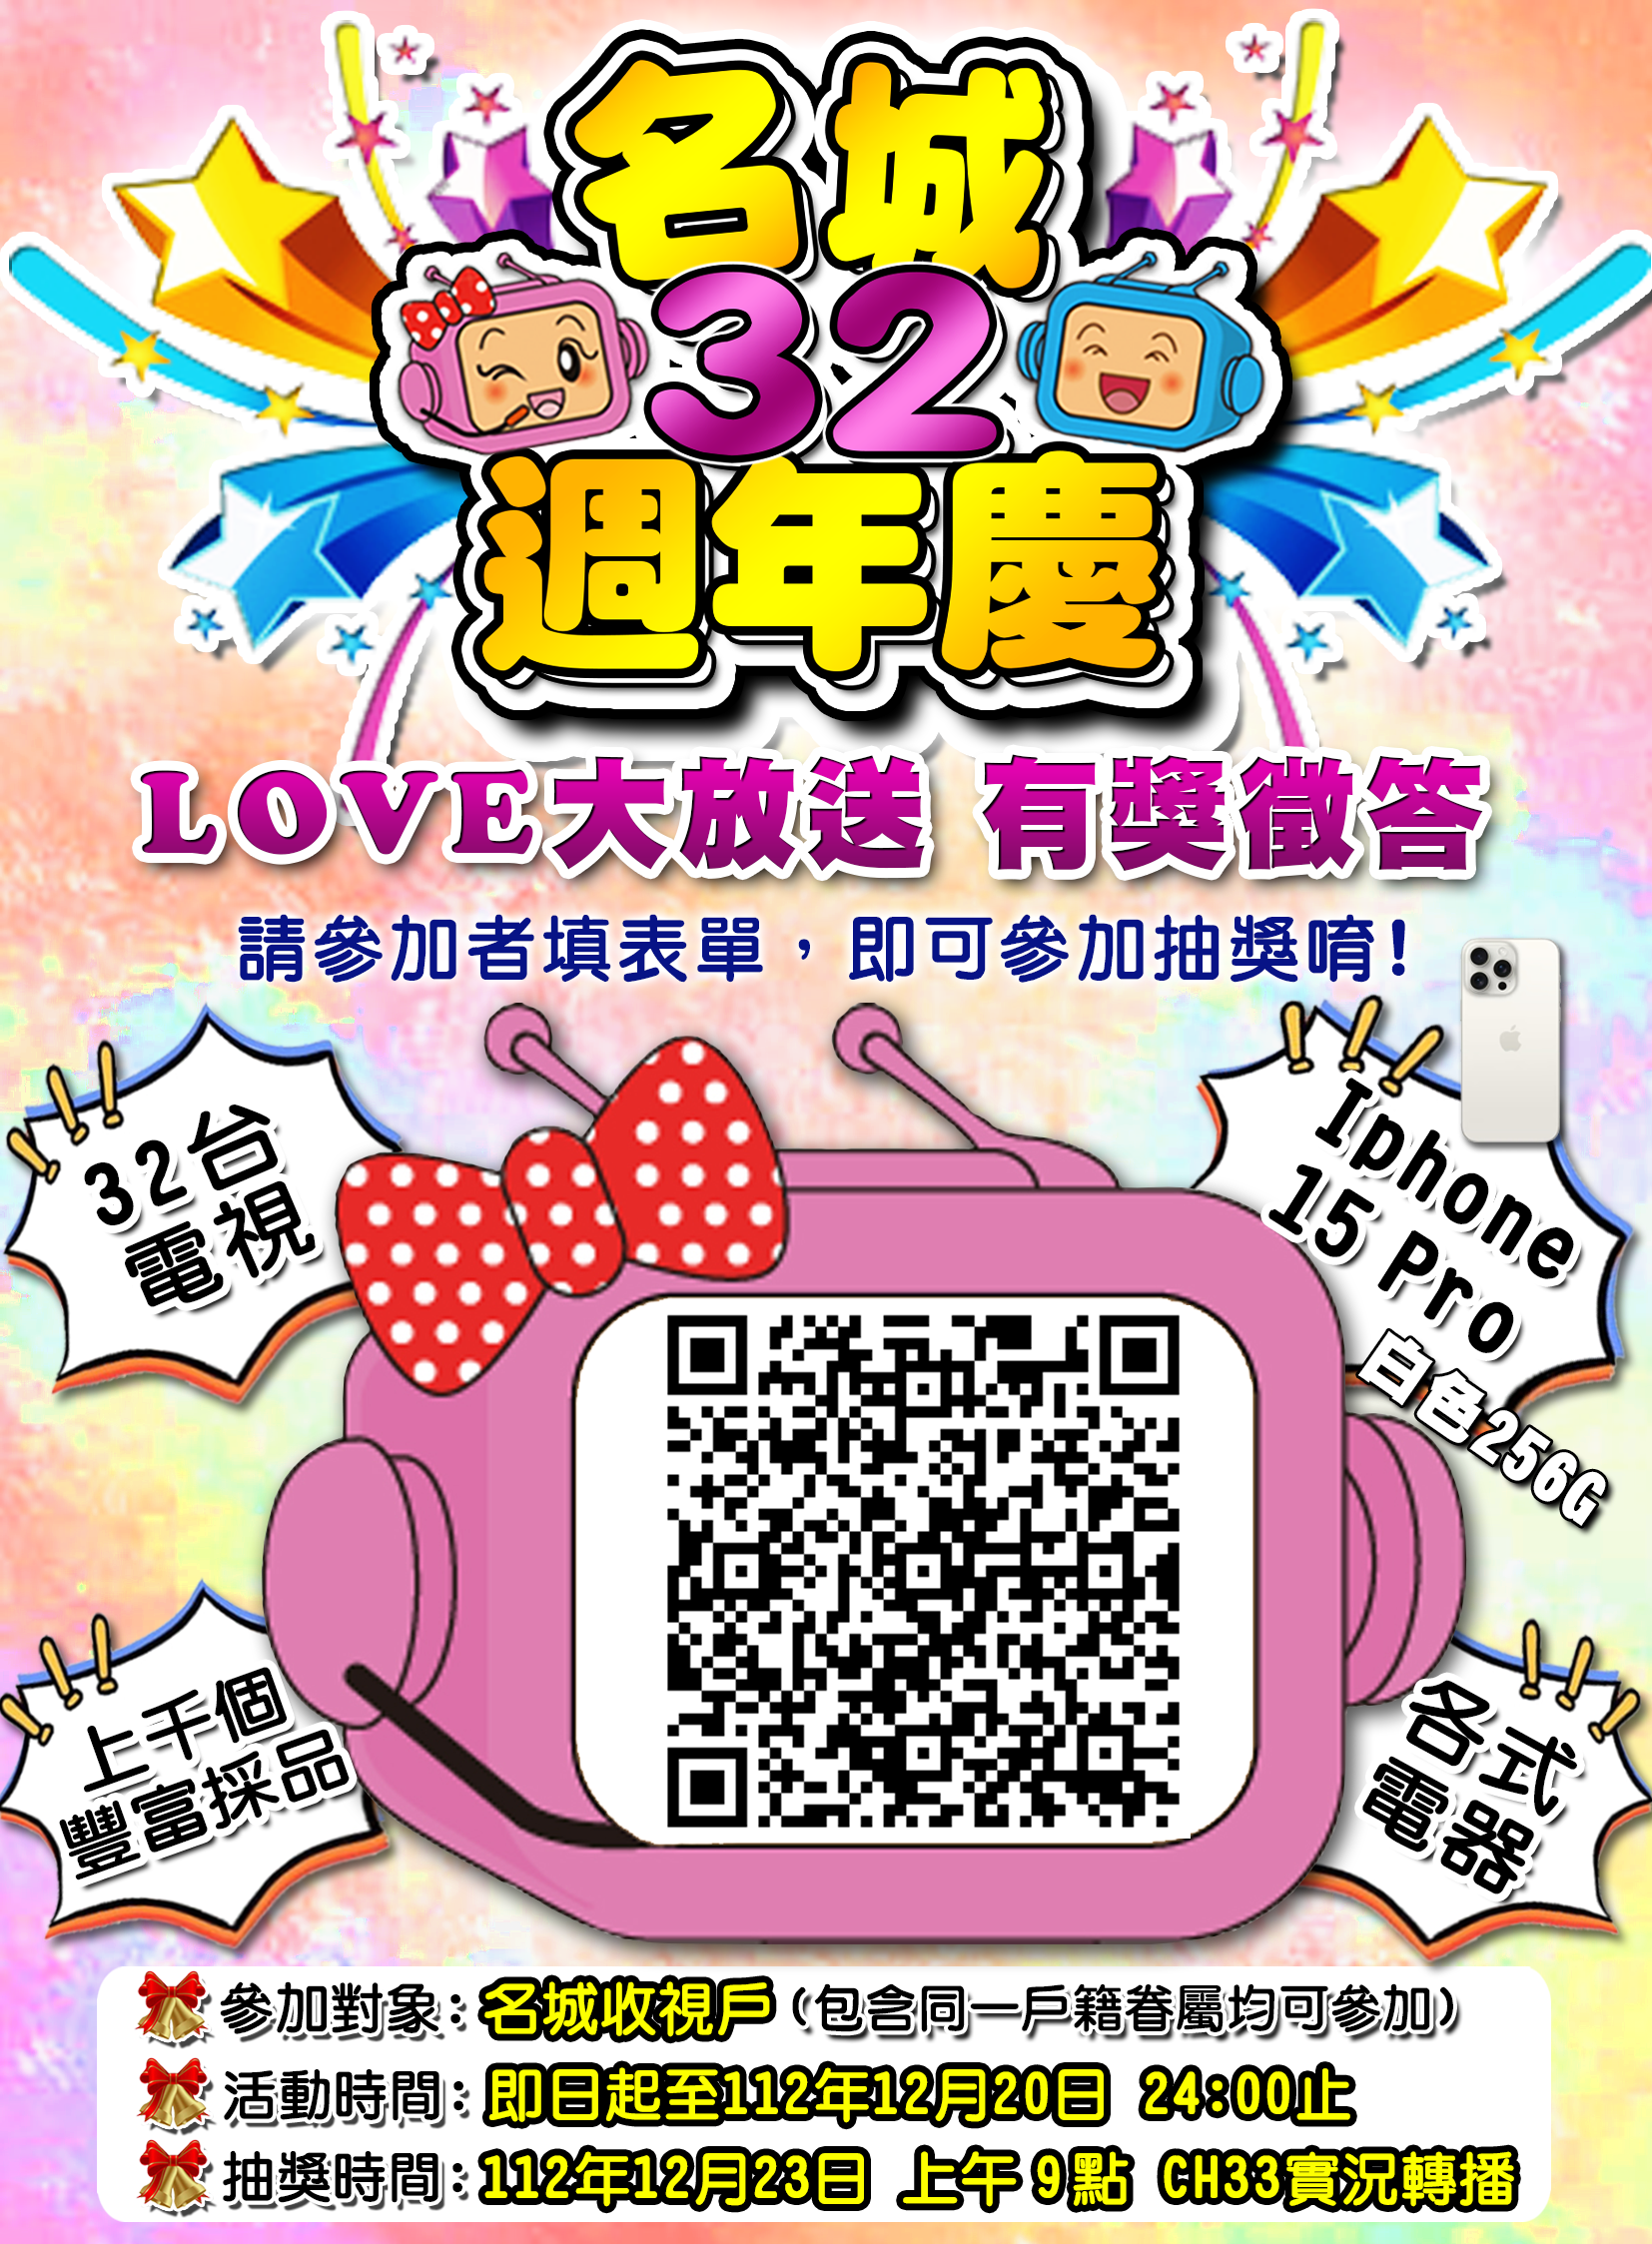 名城Love周年慶有iPhone pro15、32台電視等金好運抽抽抽!